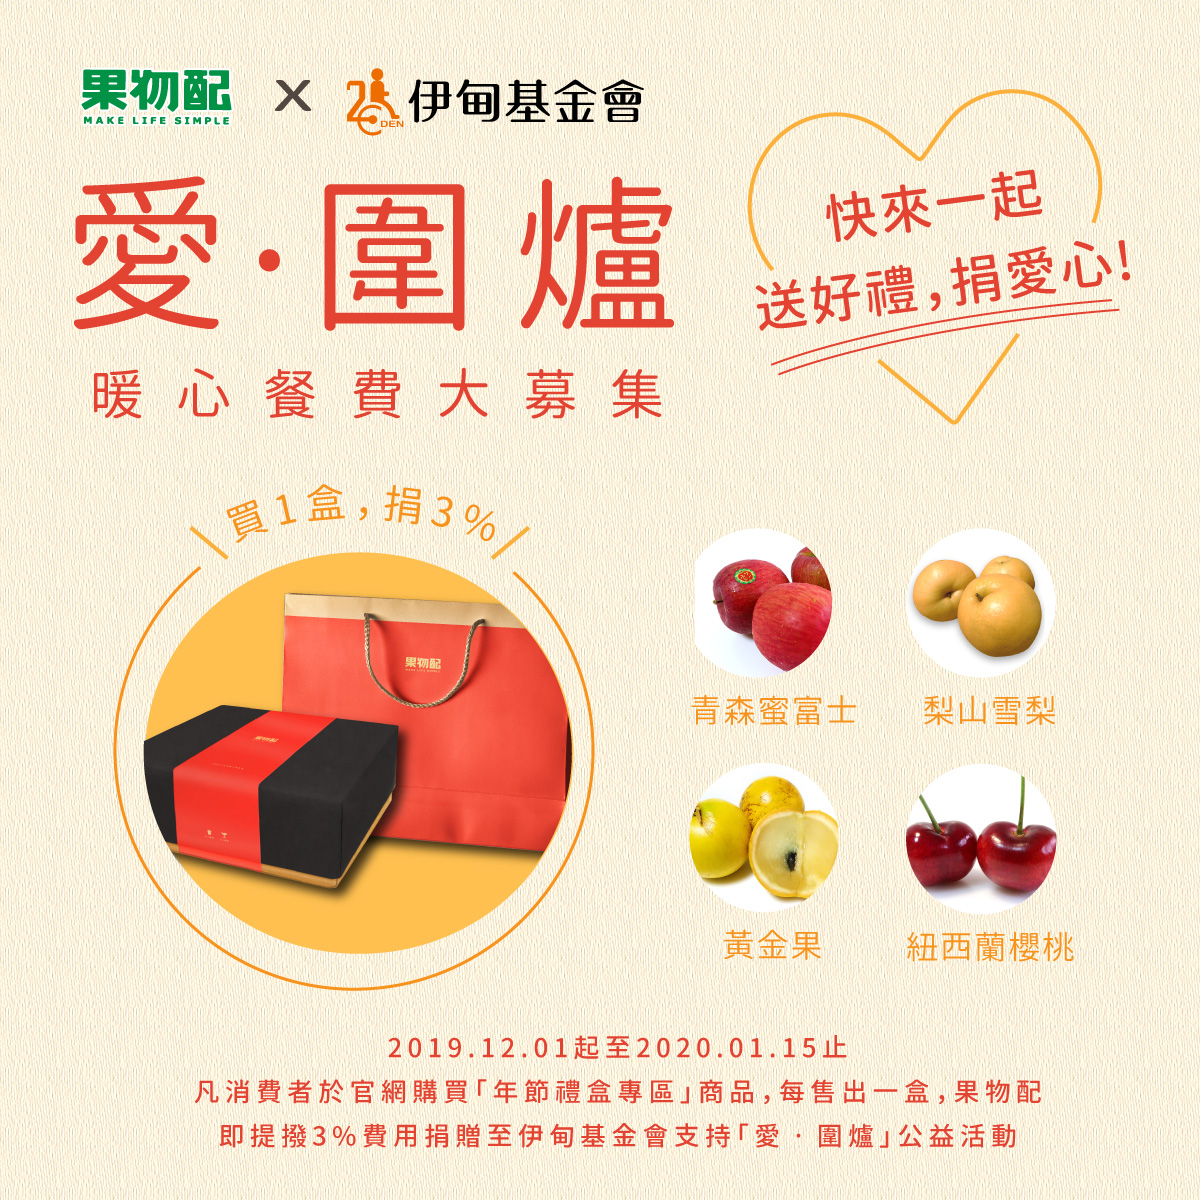 至果物訂購《御選果物典藏禮盒》即提撥3%費用支持伊甸「愛‧圍爐」公益活動